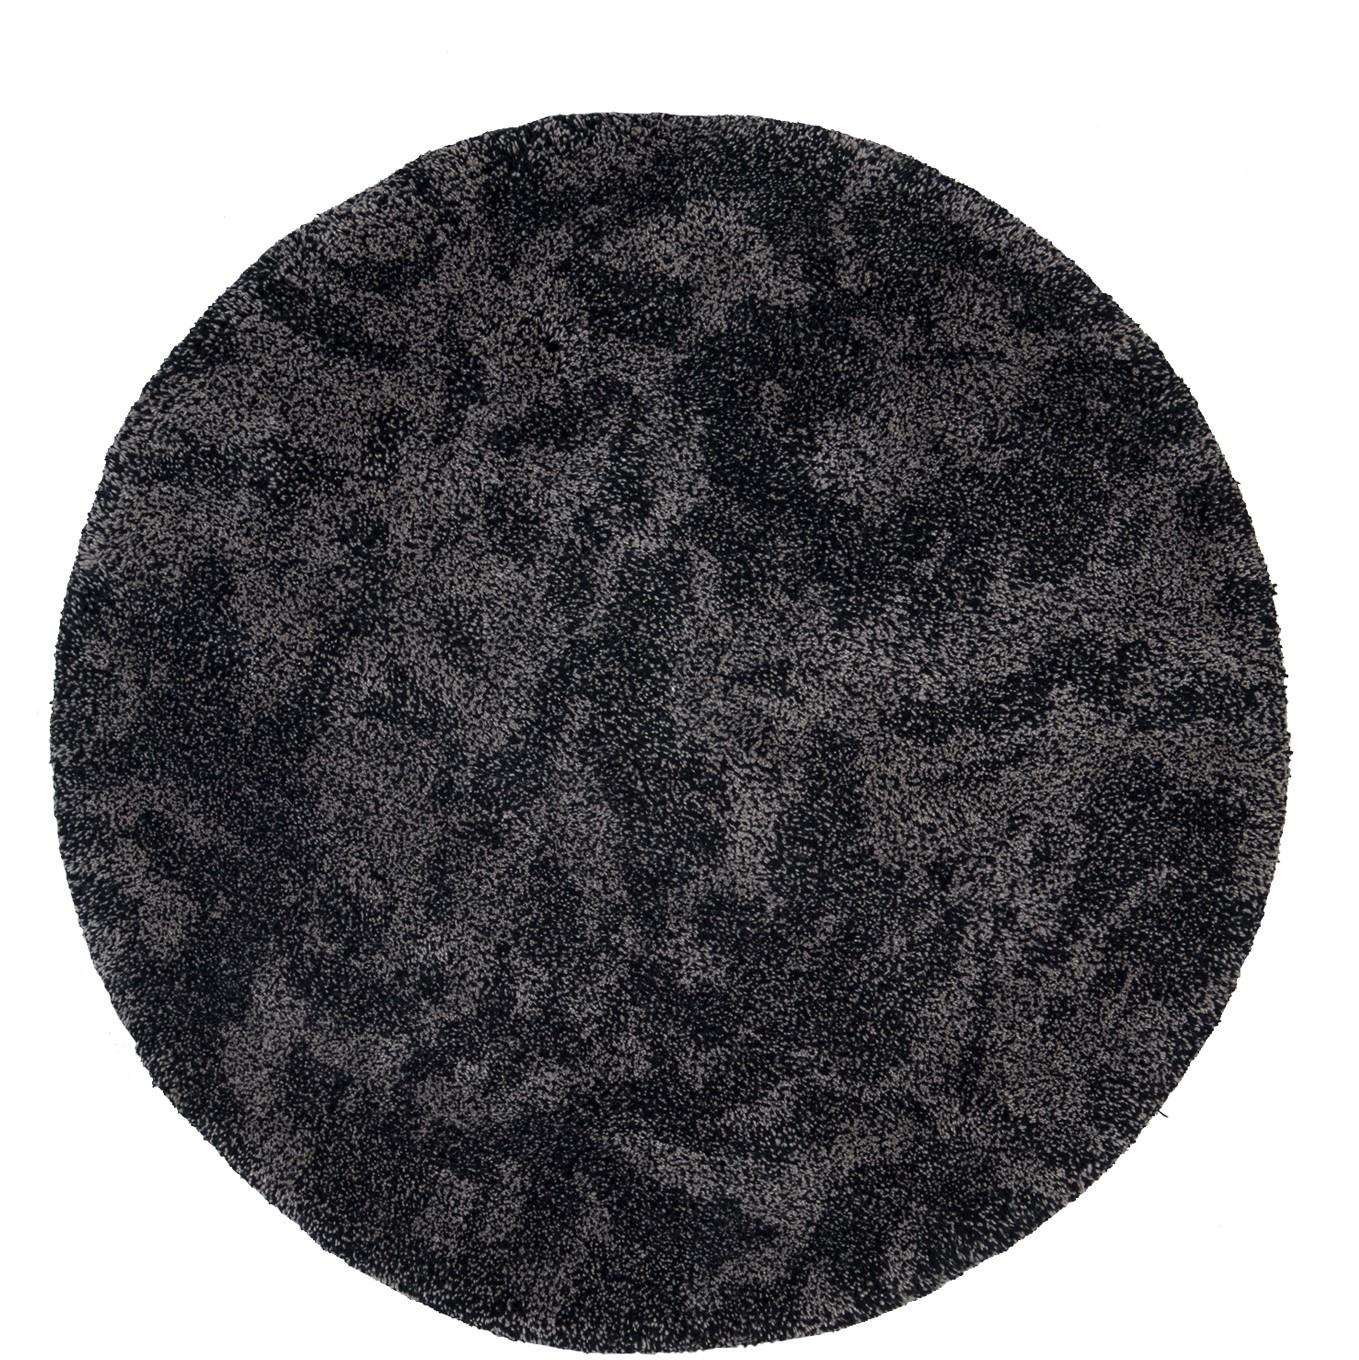 Nr.267 Freeplay handgeknüpfter Teppich von Lyk Carpet
Abmessungen: Ø 120 cm.
MATERIALIEN: 100% tibetische Hochlandwolle, handgekämmte und handgesponnene Schurwolle, natürliche pflanzengefärbte Wolle, 100 Knoten pro Quadratzoll.
Handgeknüpfte